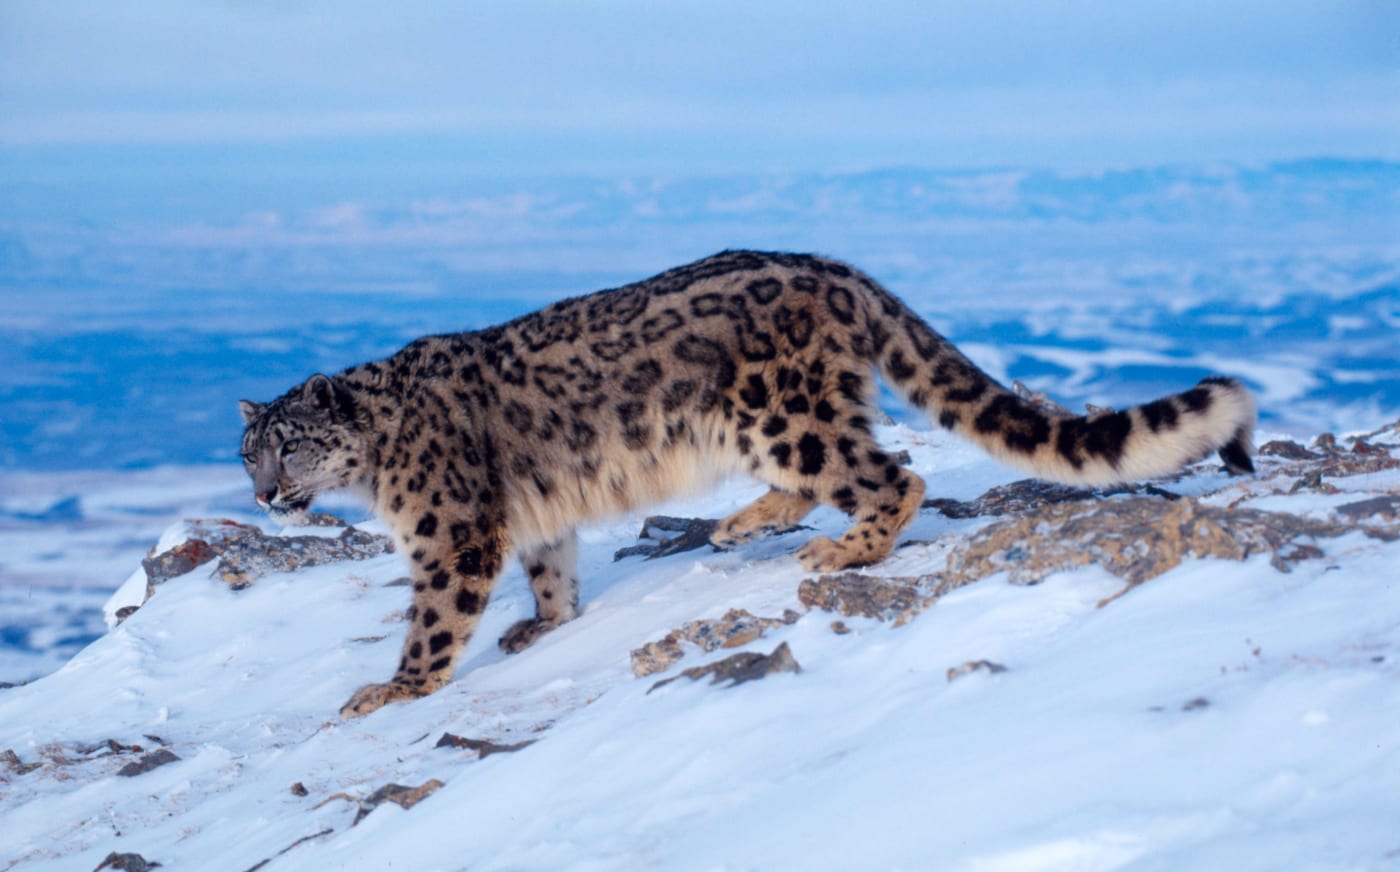 Snow leopard (Uncia uncia) walking in snowy landscape (1000px)